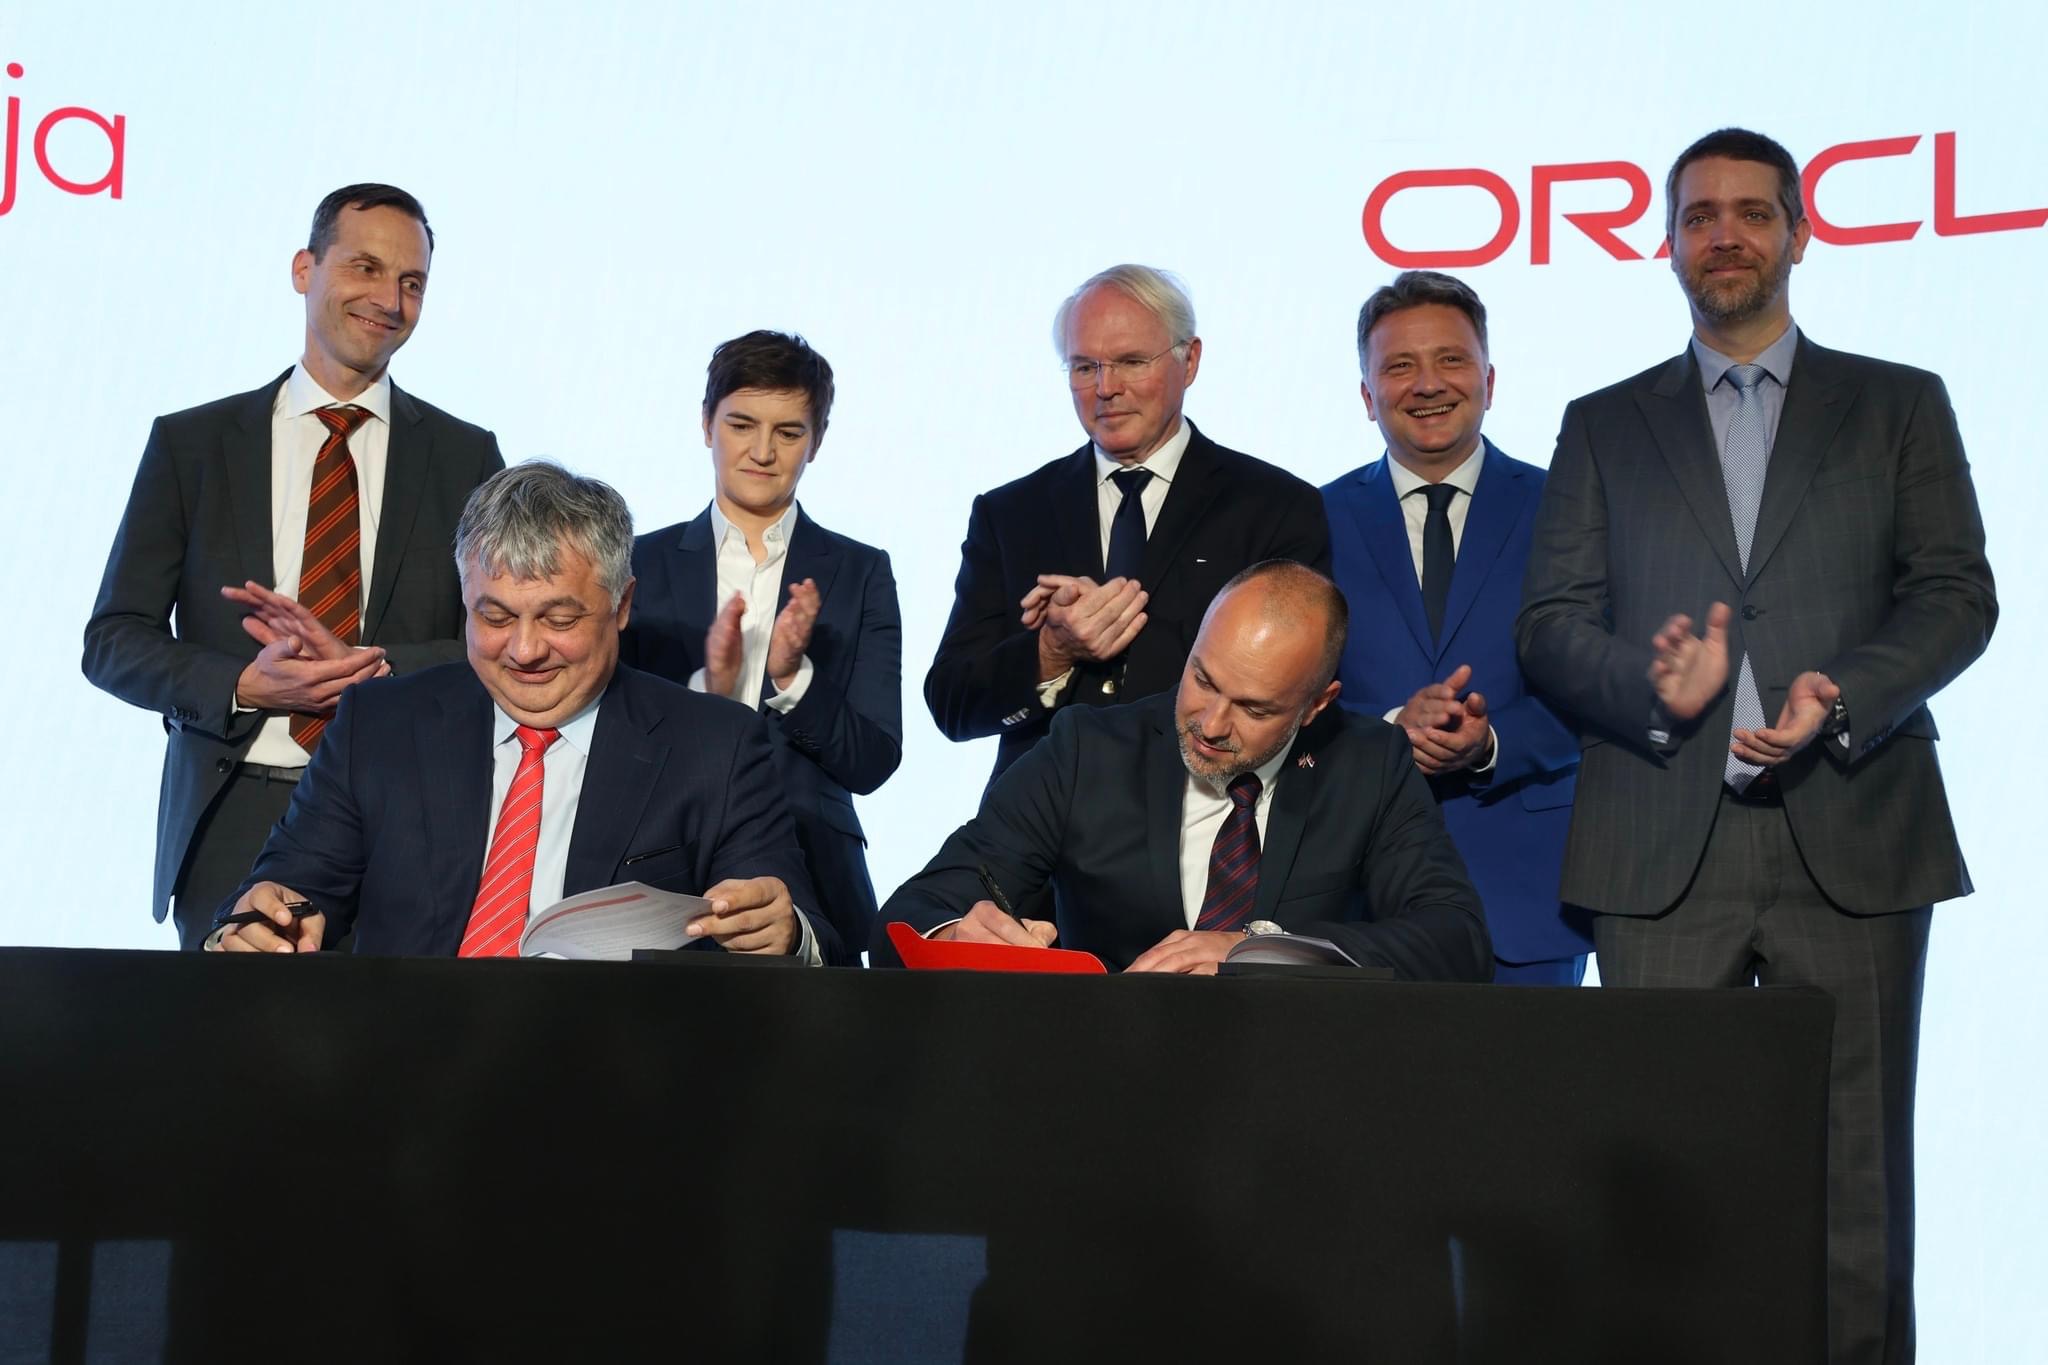 Regionalni centar korporacije Oracle otpočeo sa radom u Državnom data centru u Kragujevcu